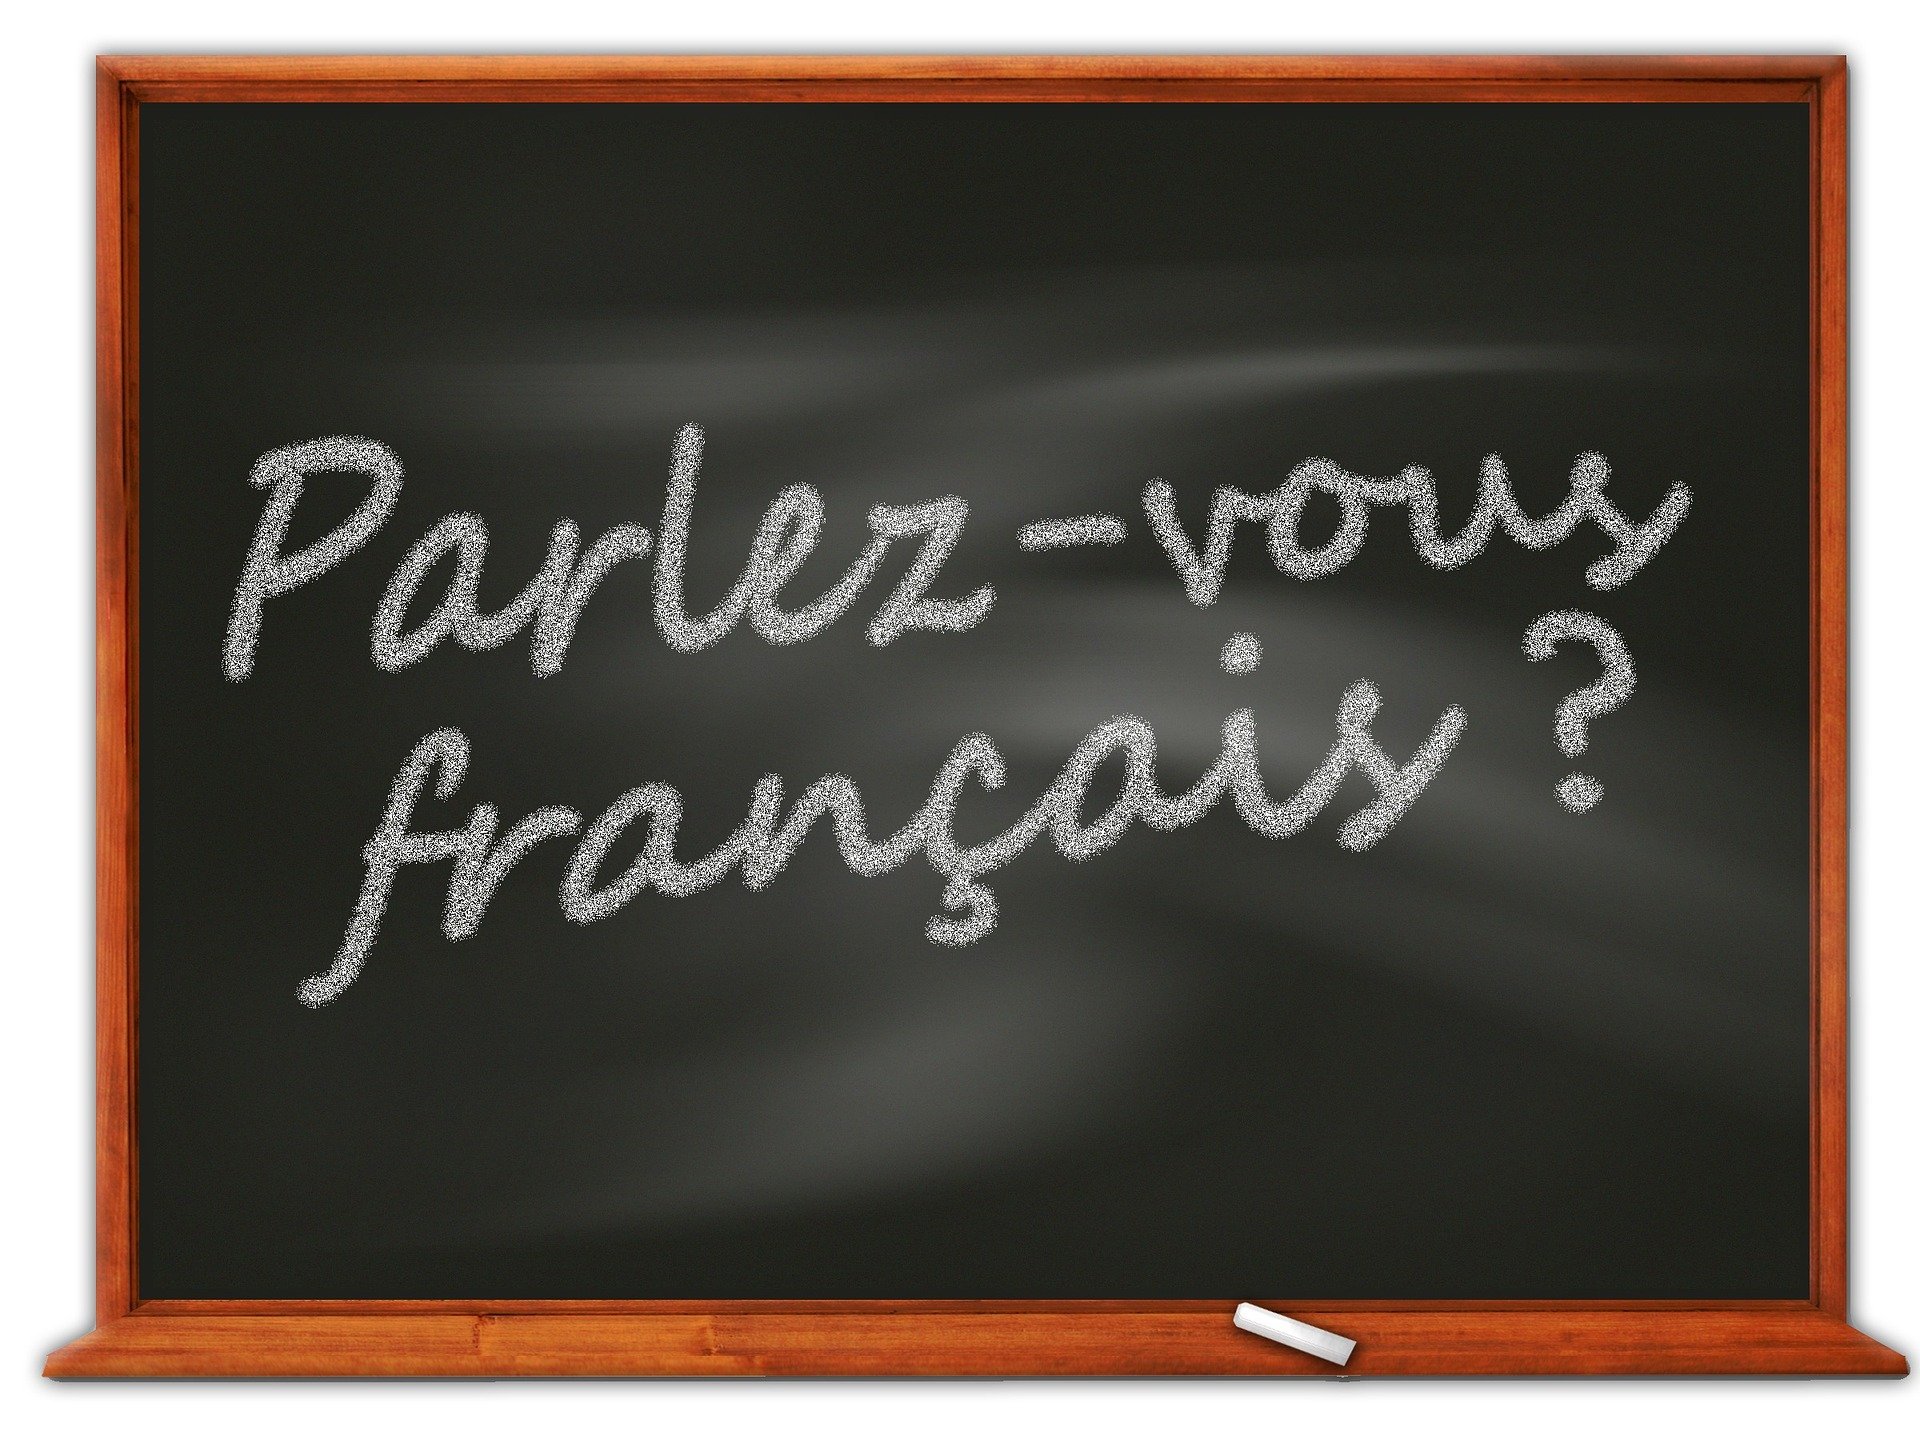 Gherkin : et pourquoi pas en français ?